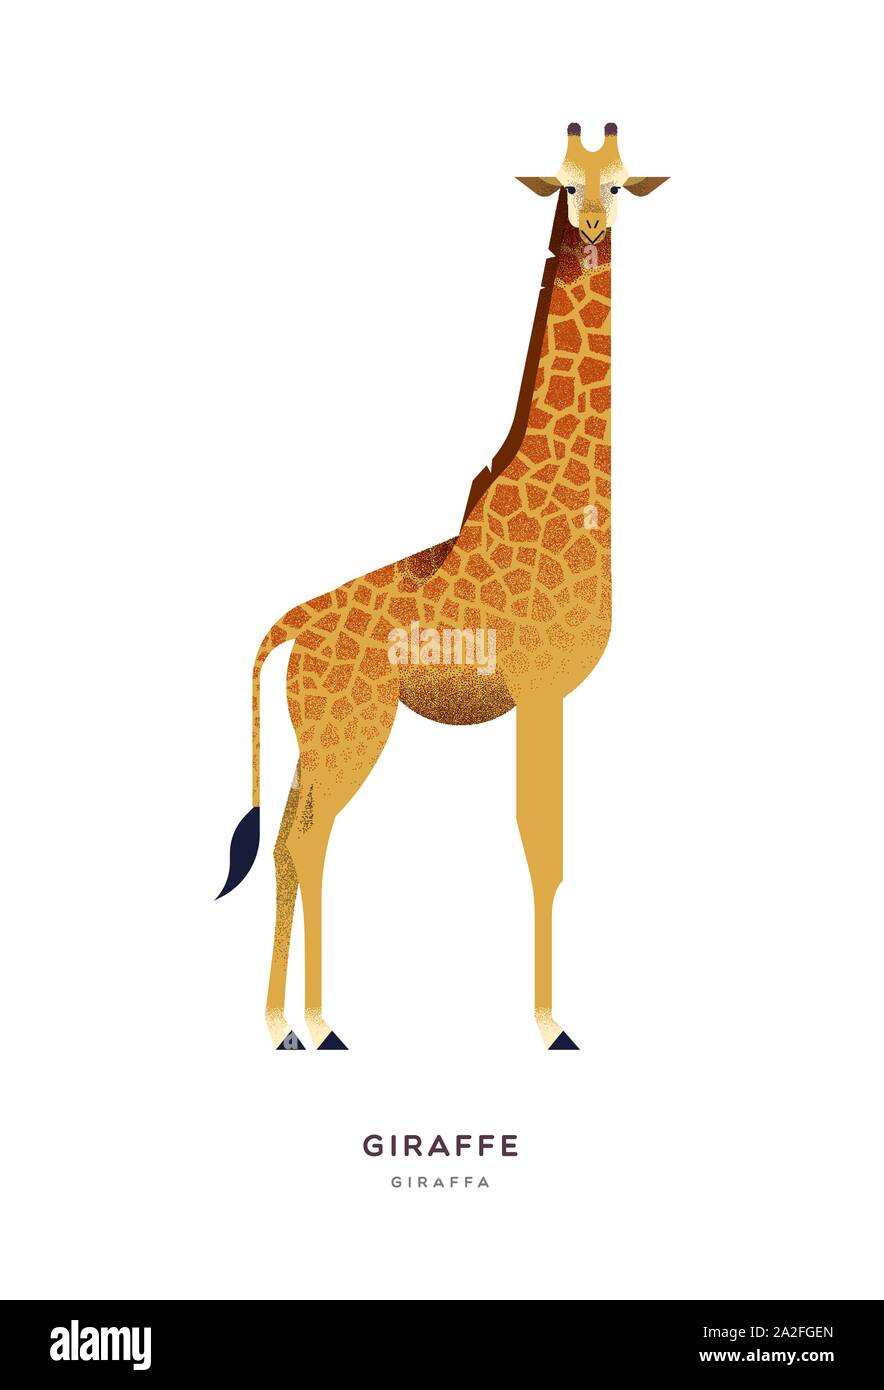 Giraffa africana illustrazione isolato su sfondo bianco, zoo safari o il concetto di animale. Istruzione di progettazione della fauna selvatica con specie di fauna nome etichetta. Illustrazione Vettoriale